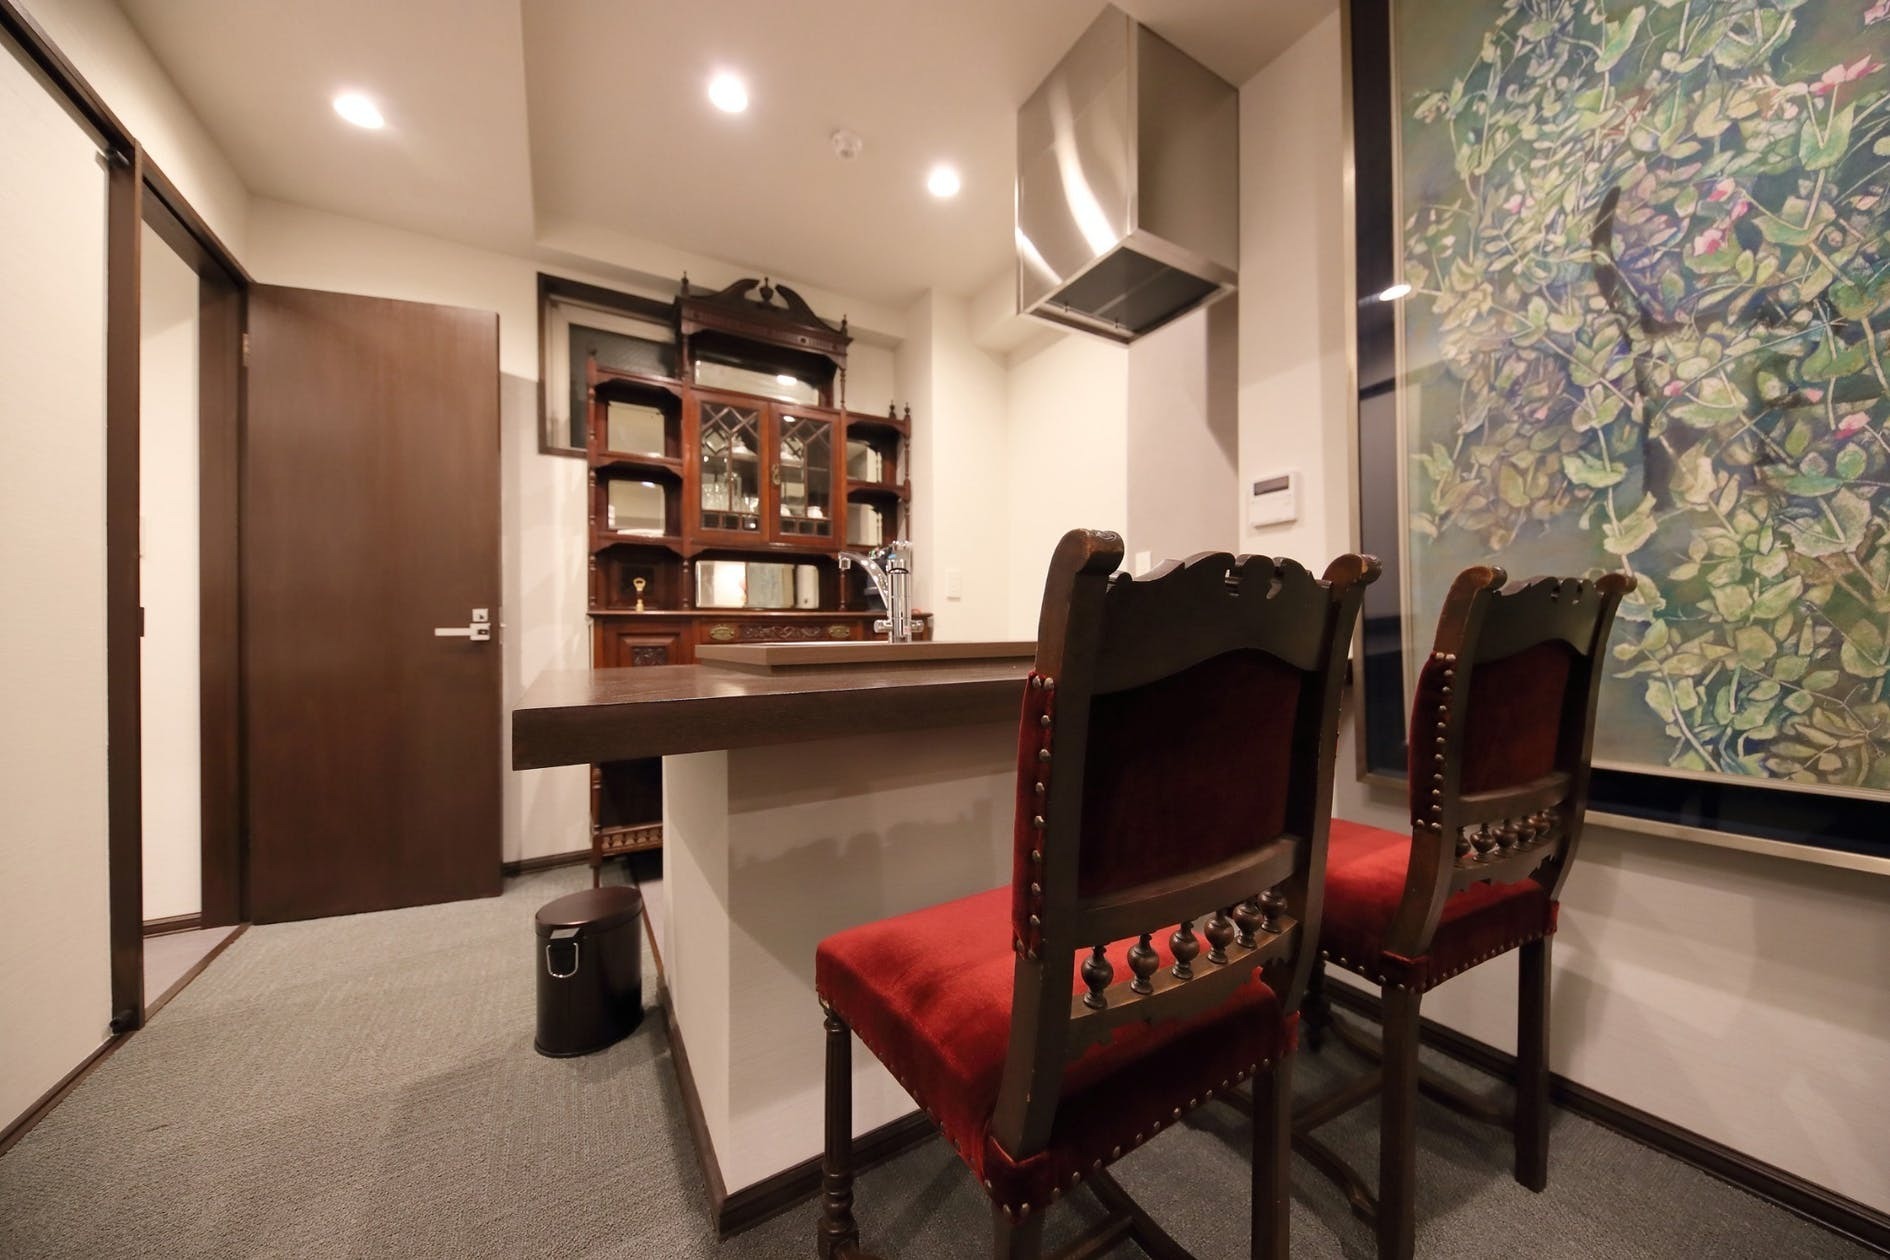 使い込まれたシャビーな質感を持つ家具でコーディネートされたインテリアスタイルのお部屋です。